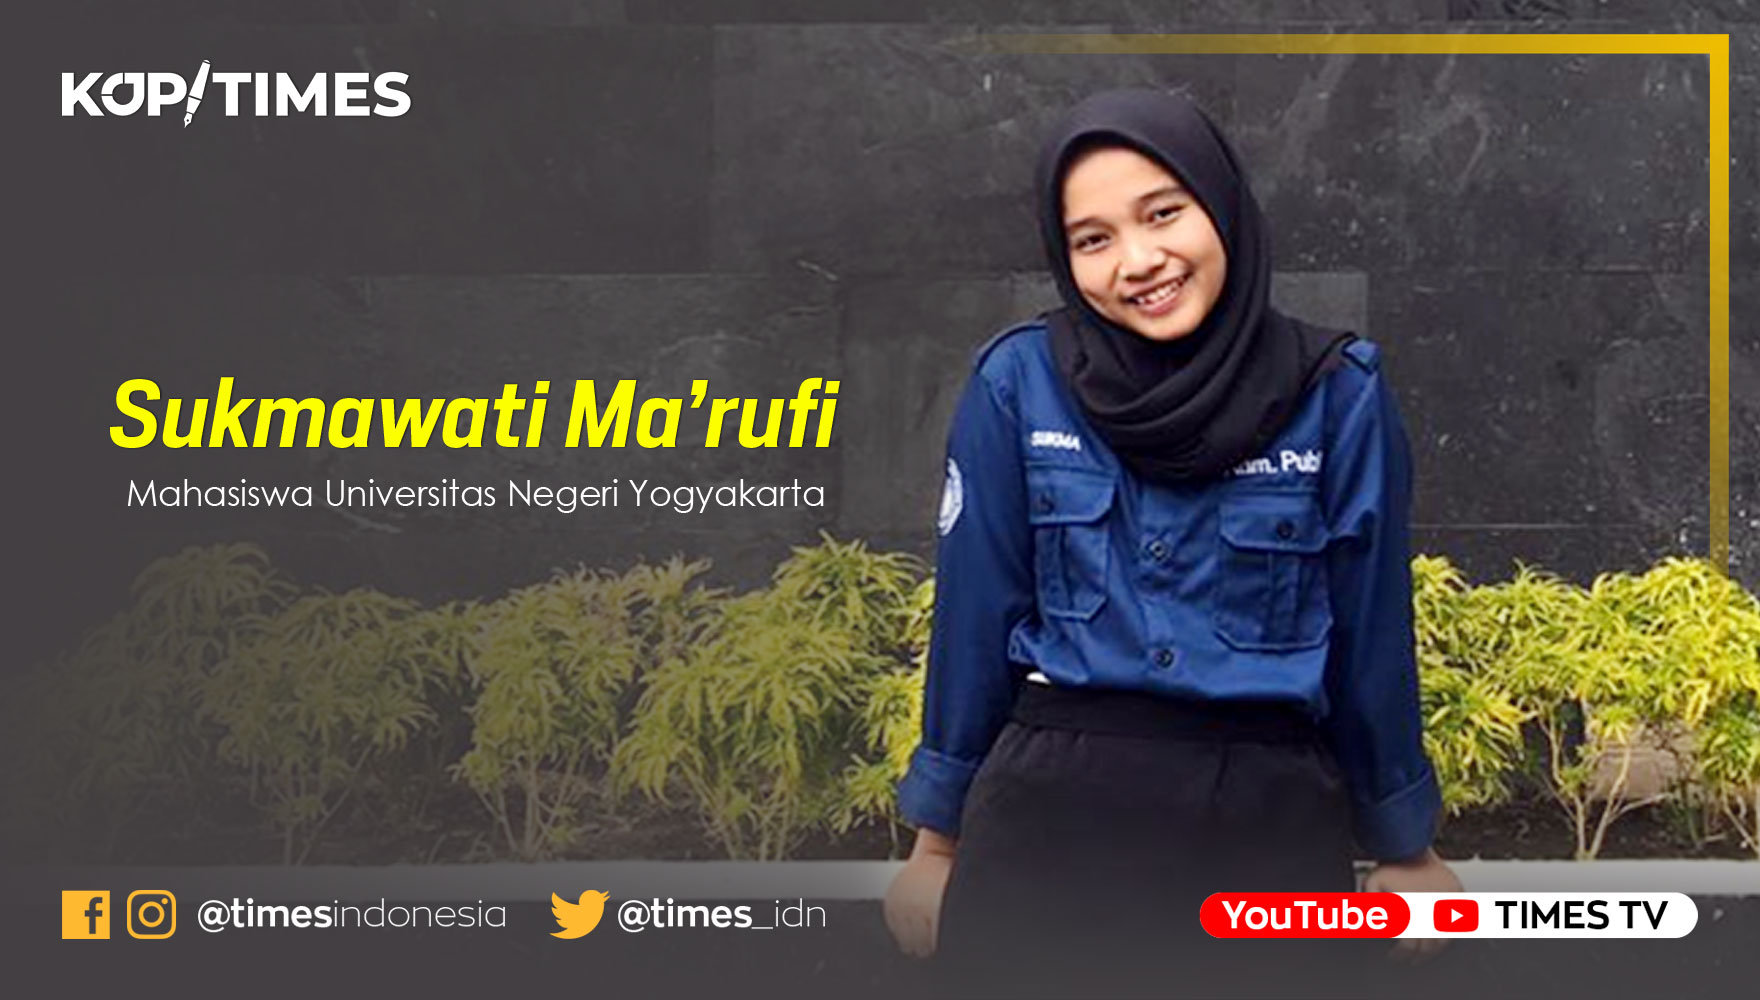 Sukmawati Ma’rufi, Mahasiswa Universitas Negeri Yogyakarta.